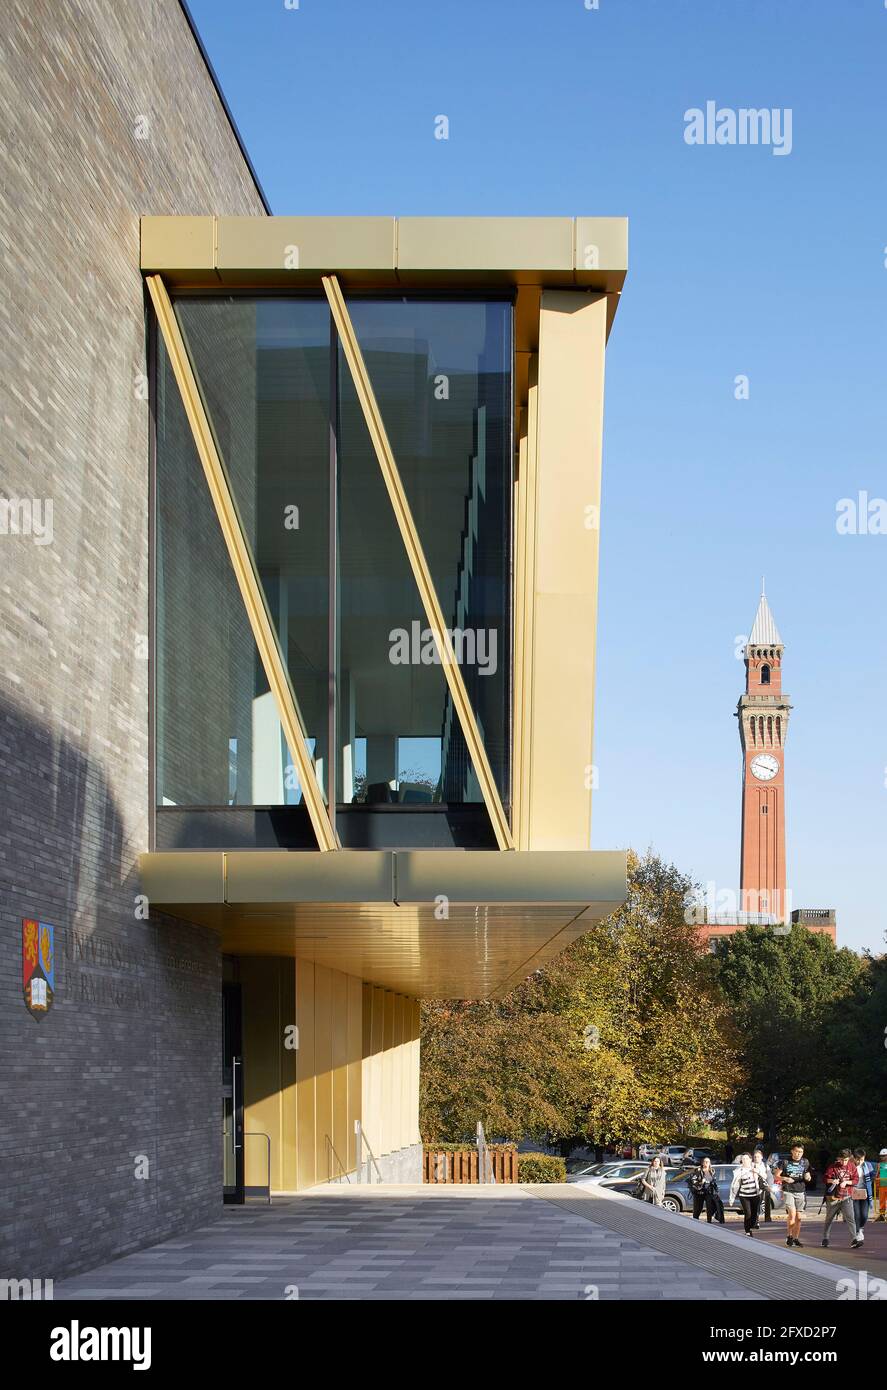 Vista de la entrada principal y contexto. University of Birmingham, Collaborative Teaching Laboratory, Birmingham, Reino Unido. Arquitecto: Sheppard Robson Foto de stock